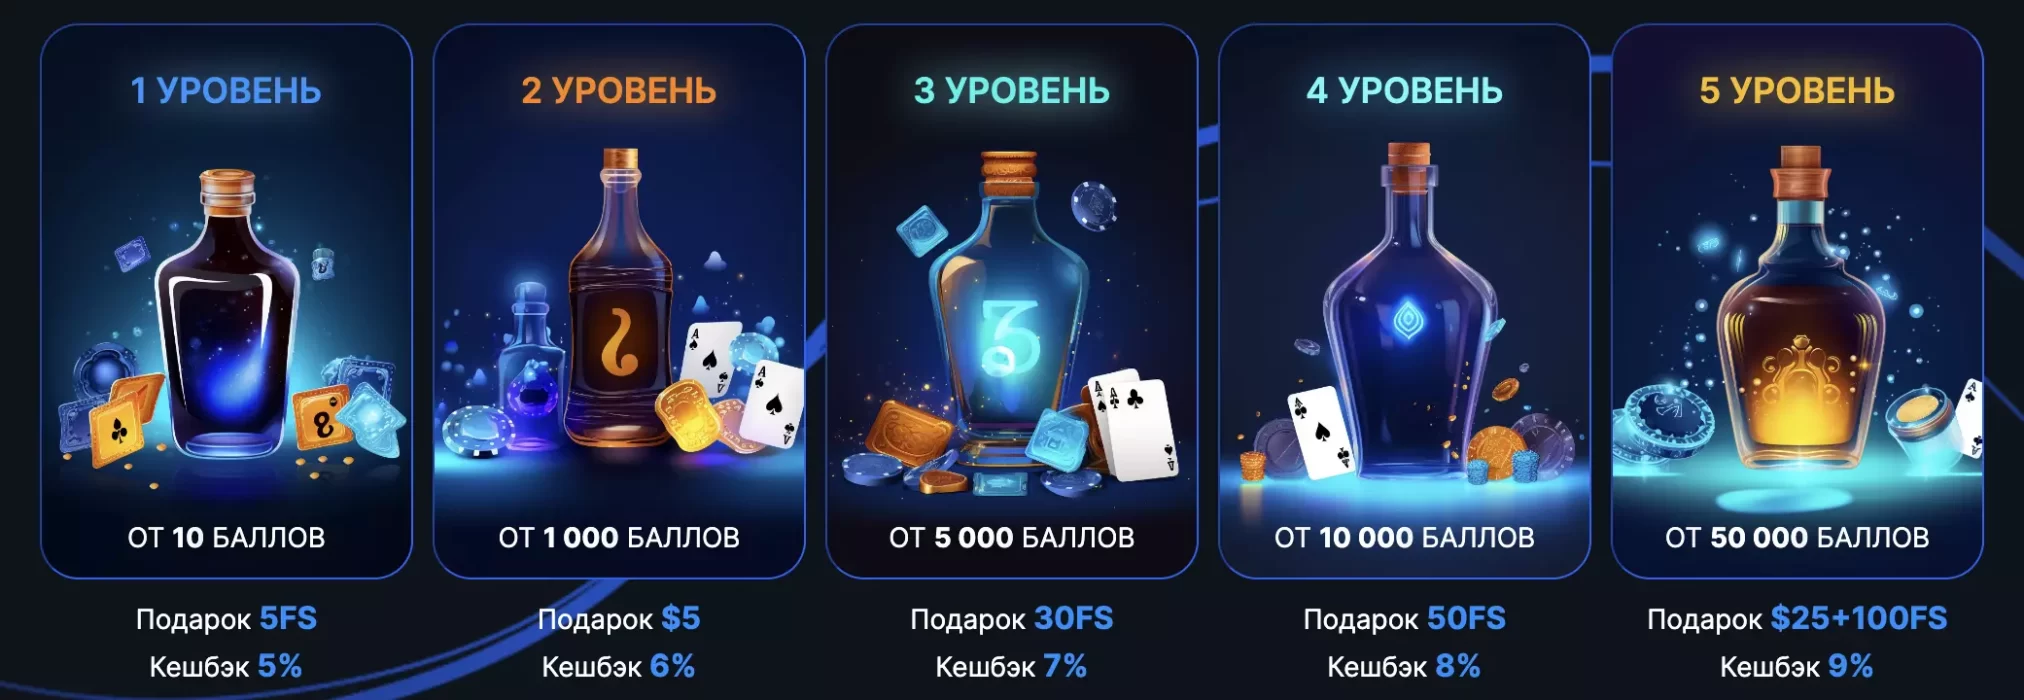 Программа Лояльности Vodka казино